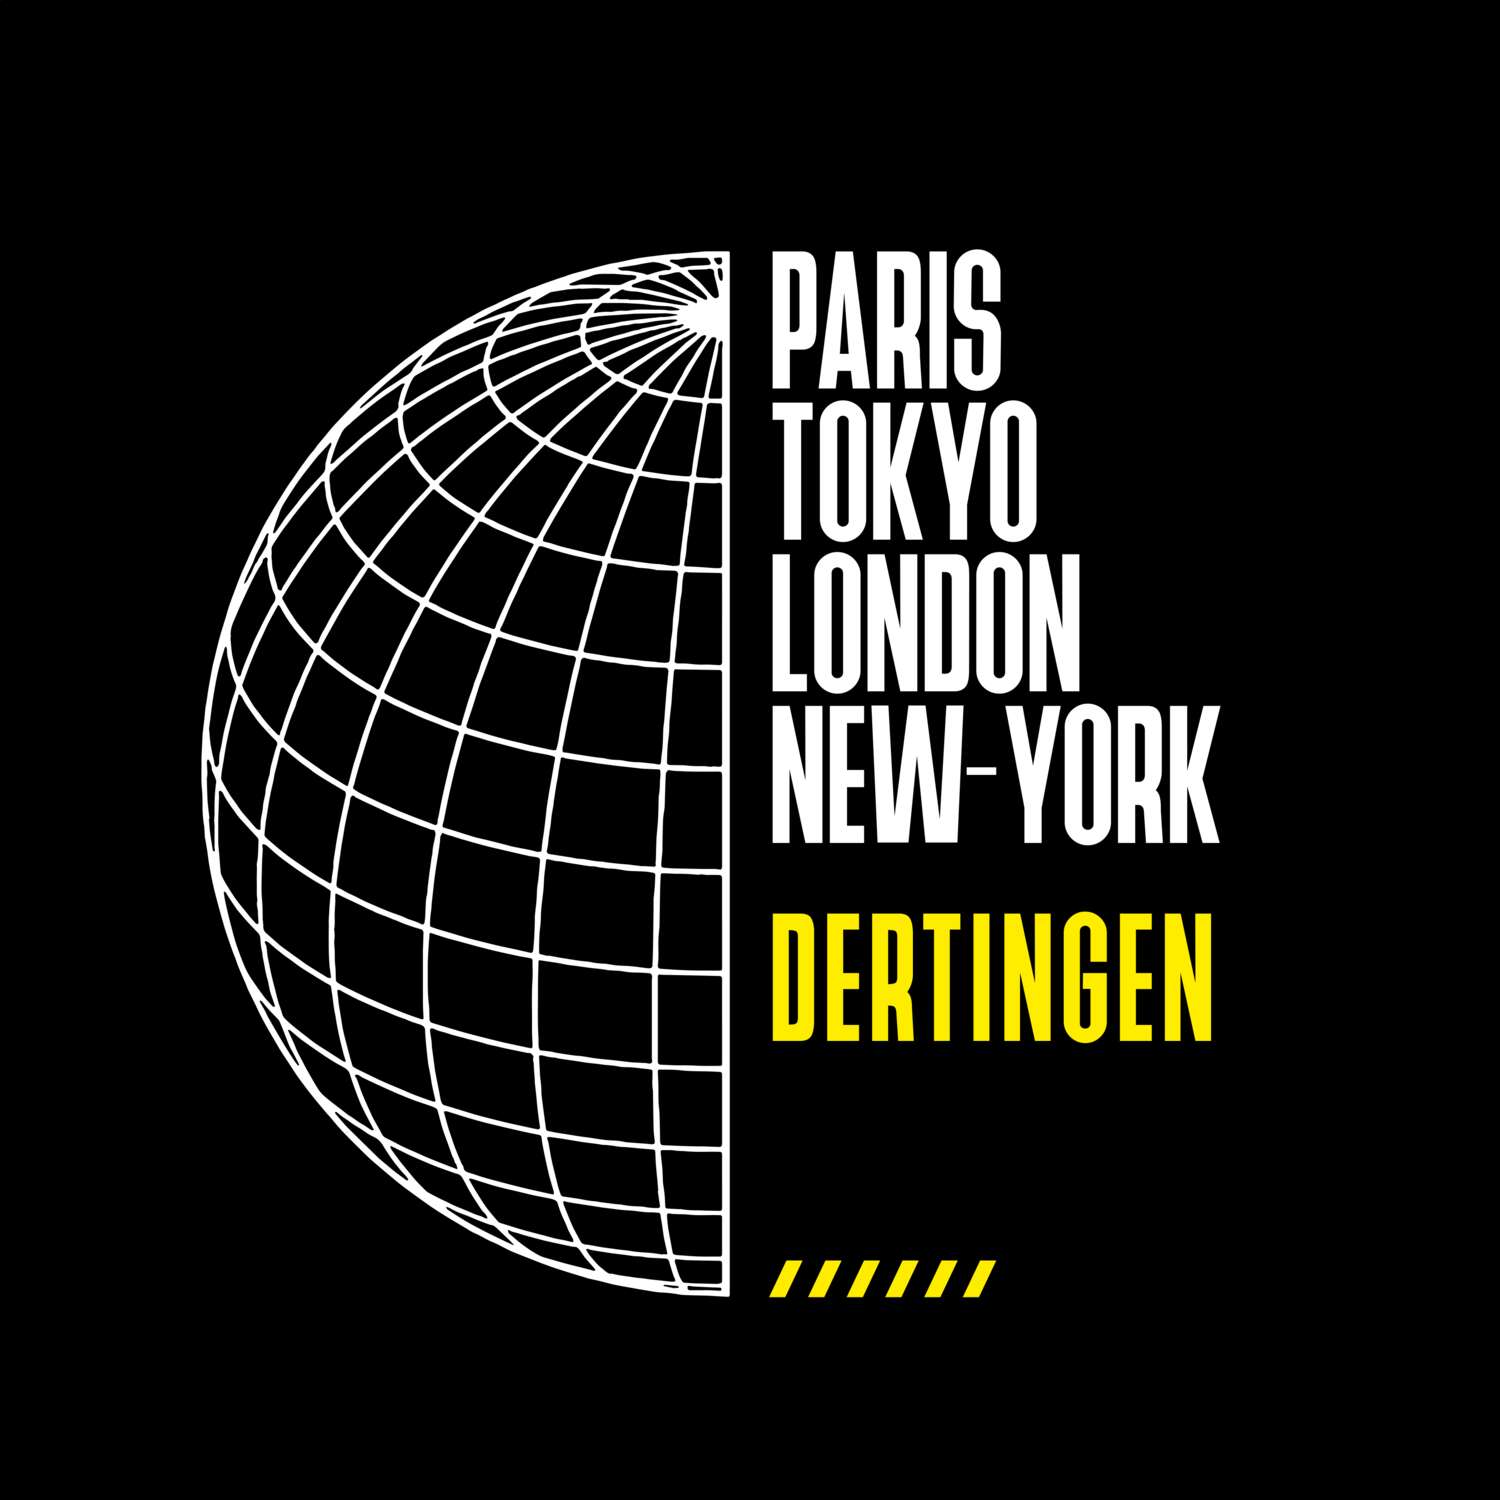 Dertingen T-Shirt »Paris Tokyo London«